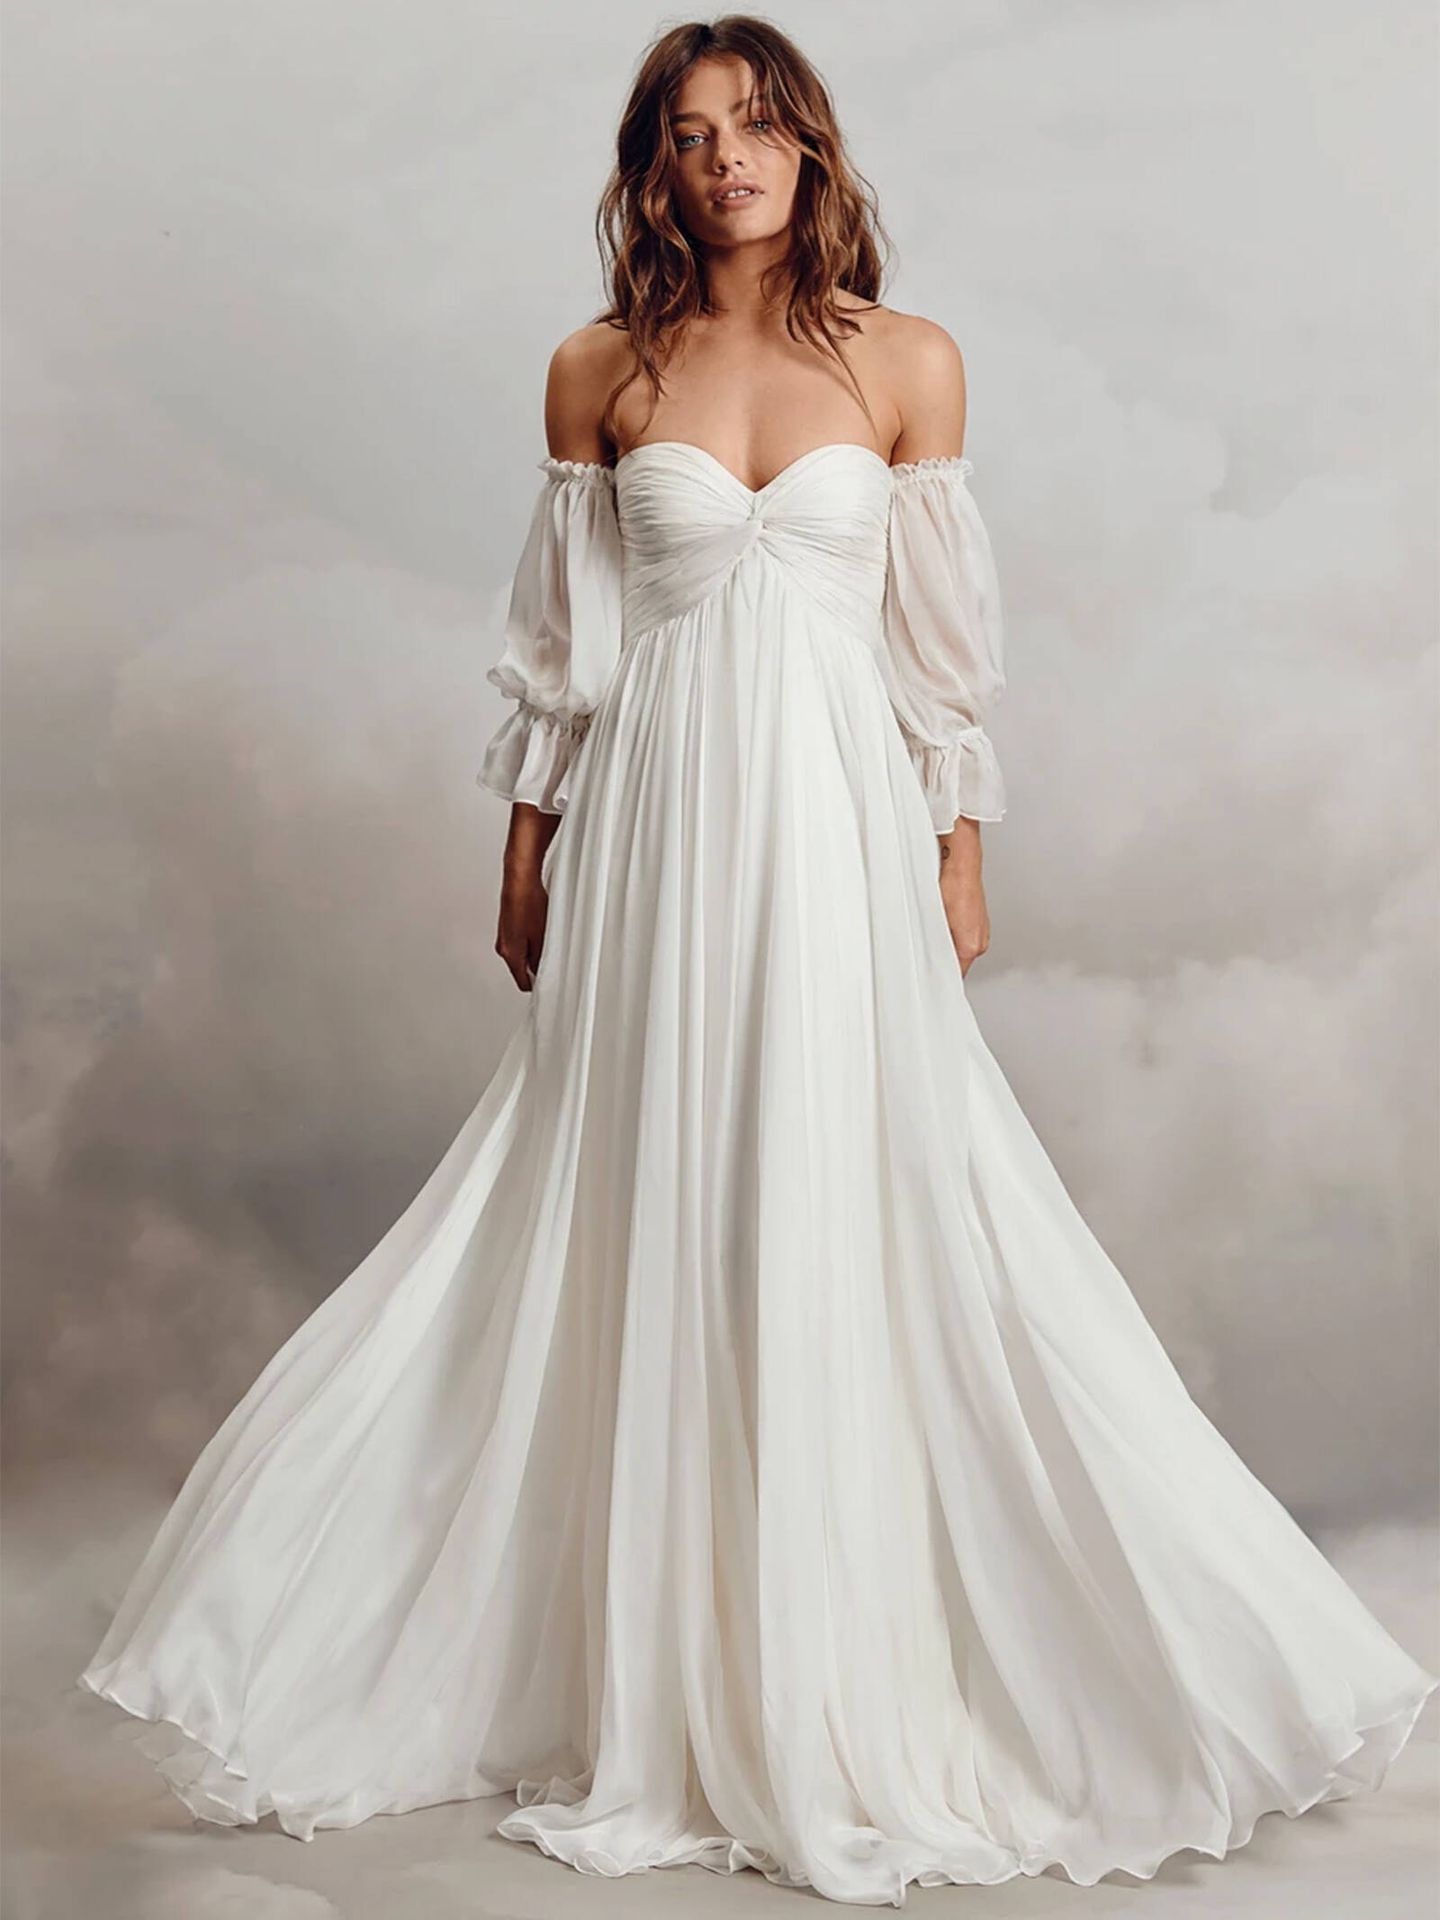 Uno de los espectaculares vestidos de novia de Catherine Deane. (Cortesía)